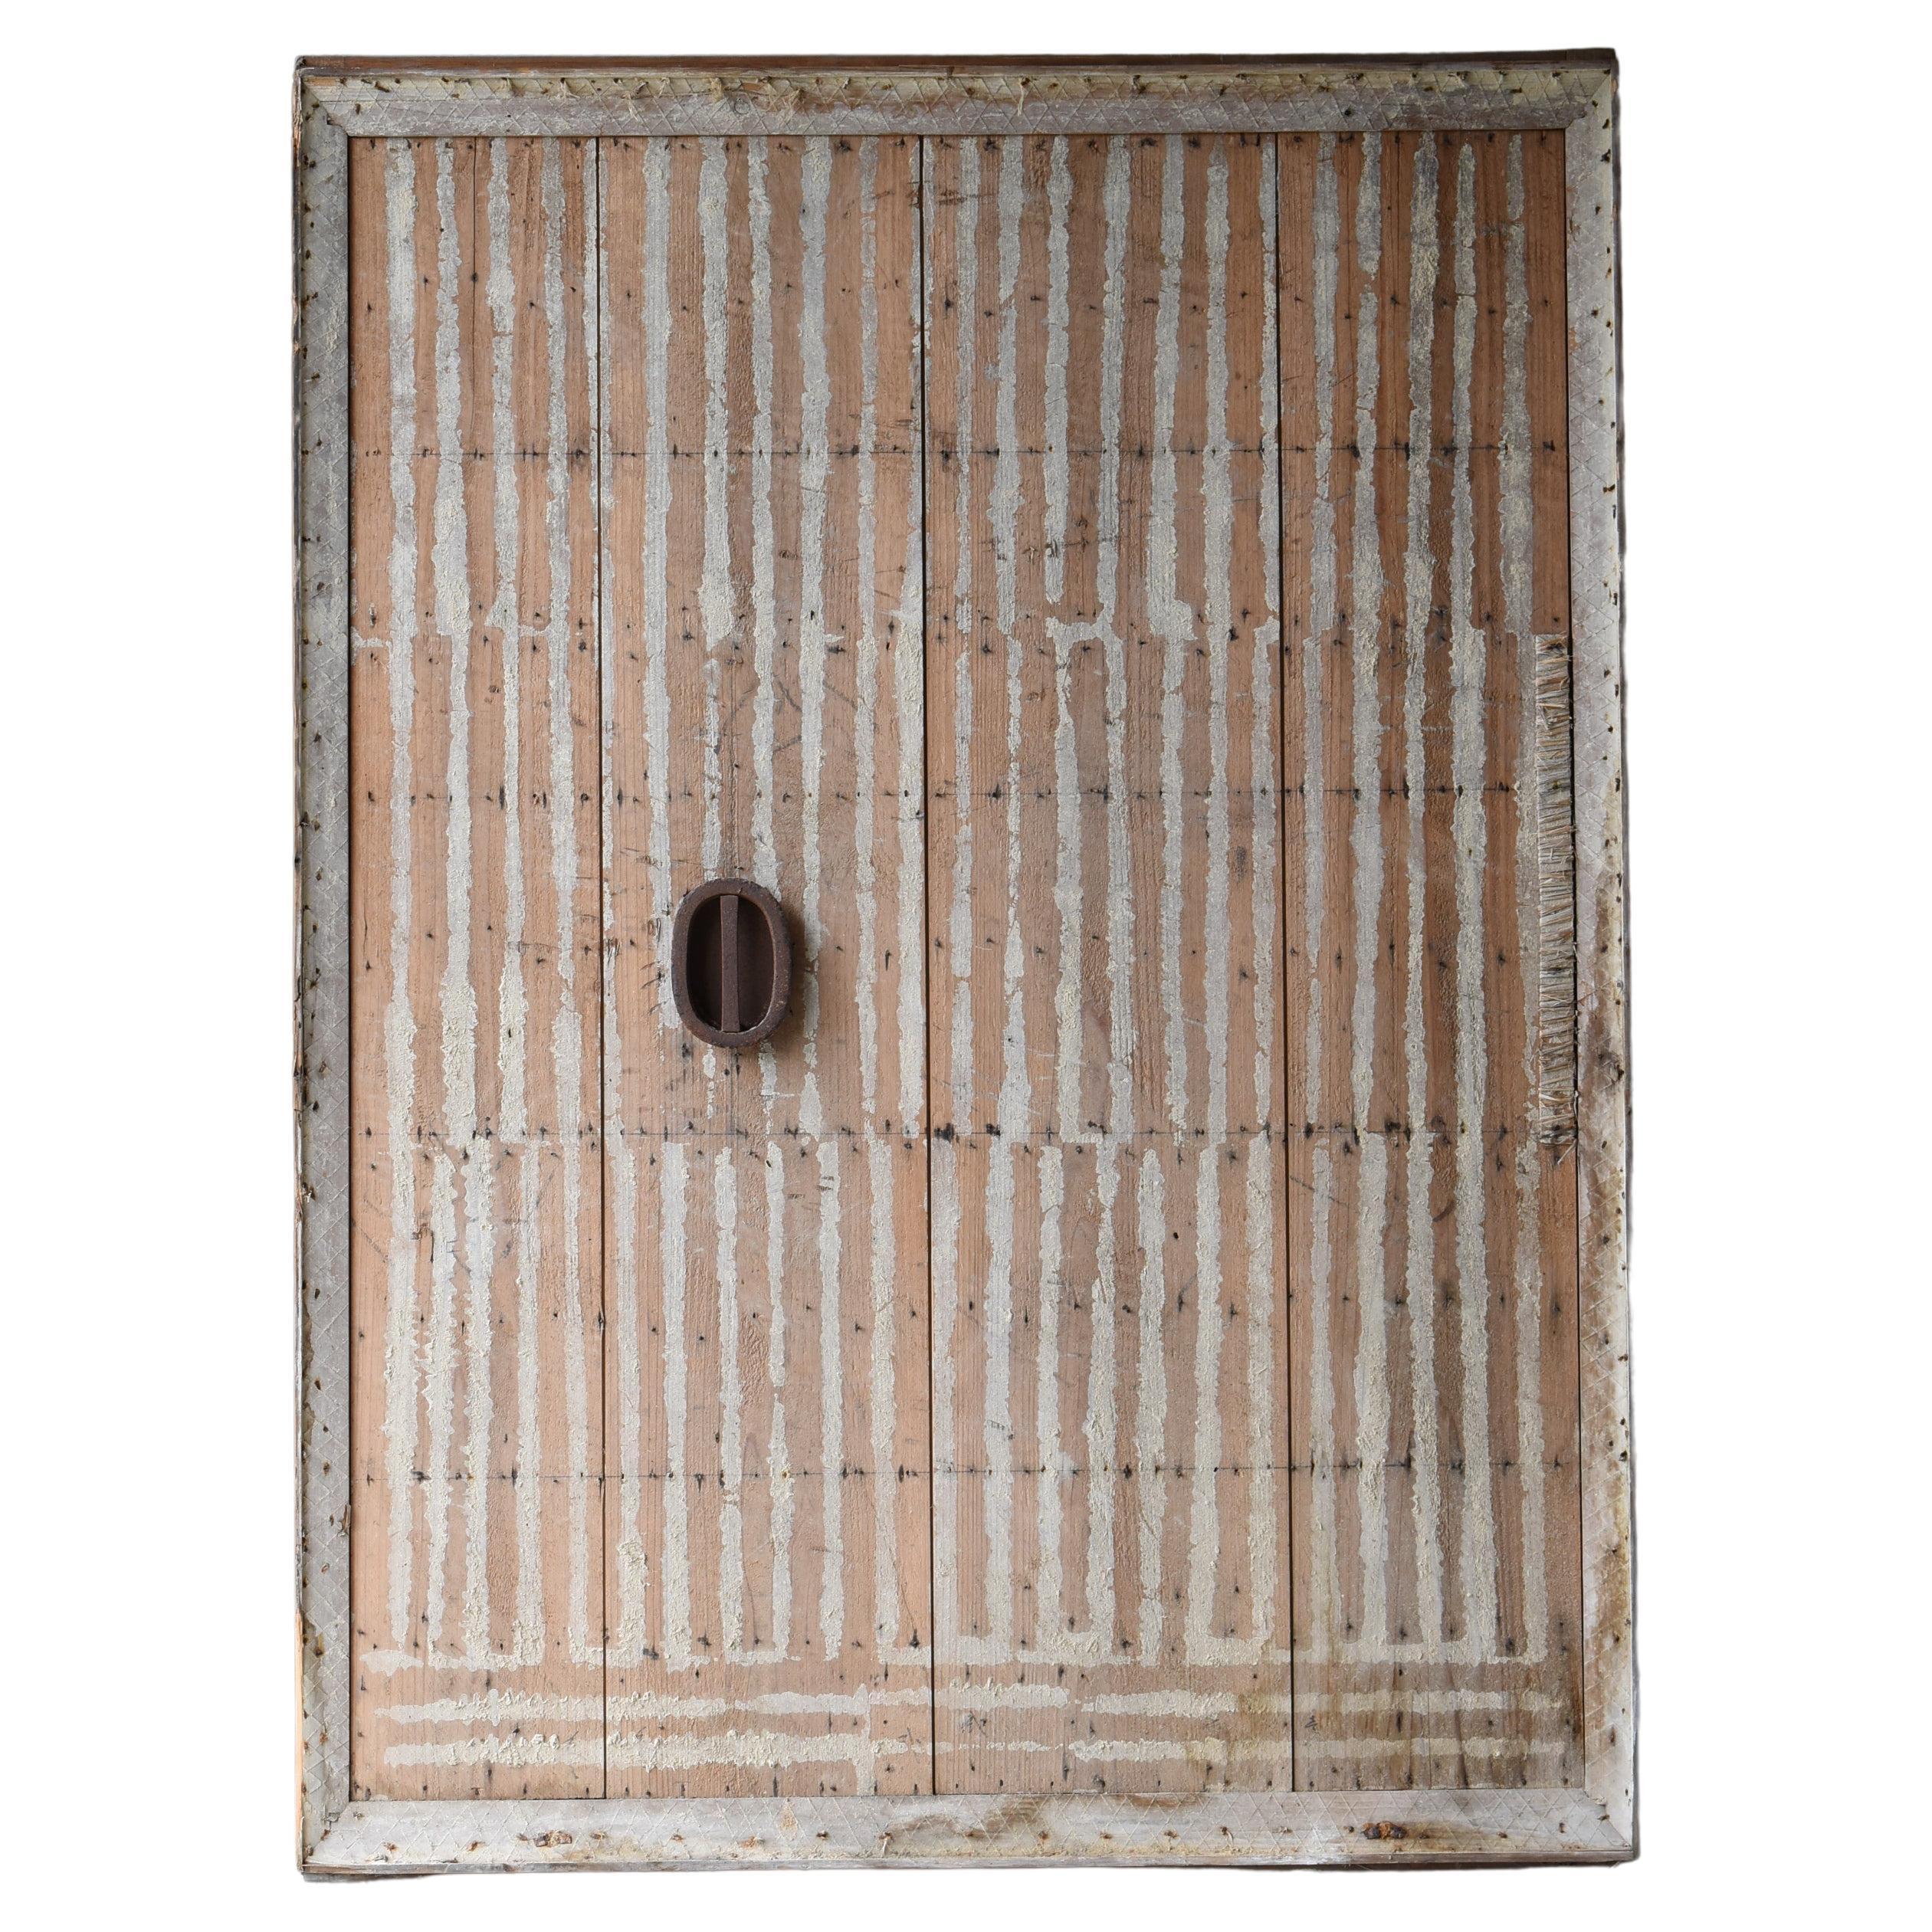 Japanese Antique Huge Door 'Abstract Art' 1800s-1900s/Architecture Wabi-Sabi